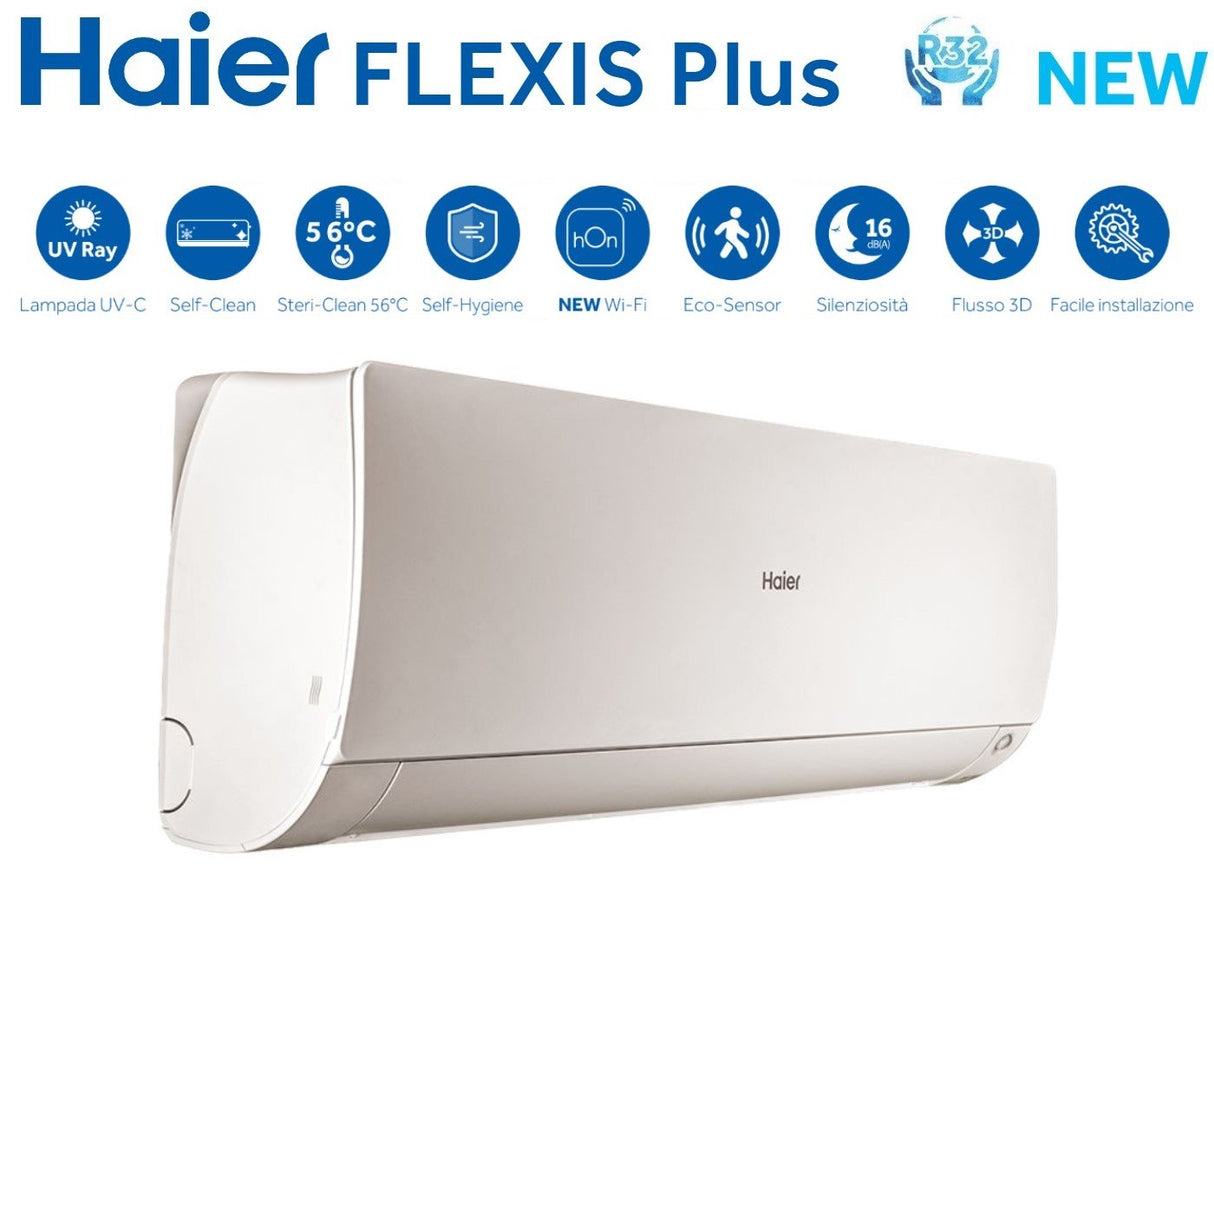 immagine-3-haier-climatizzatore-condizionatore-haier-dual-split-inverter-serie-flexis-plus-white-99-con-2u40s2sm1fa-r-32-wi-fi-integrato-colore-bianco-90009000-ean-8059657012425